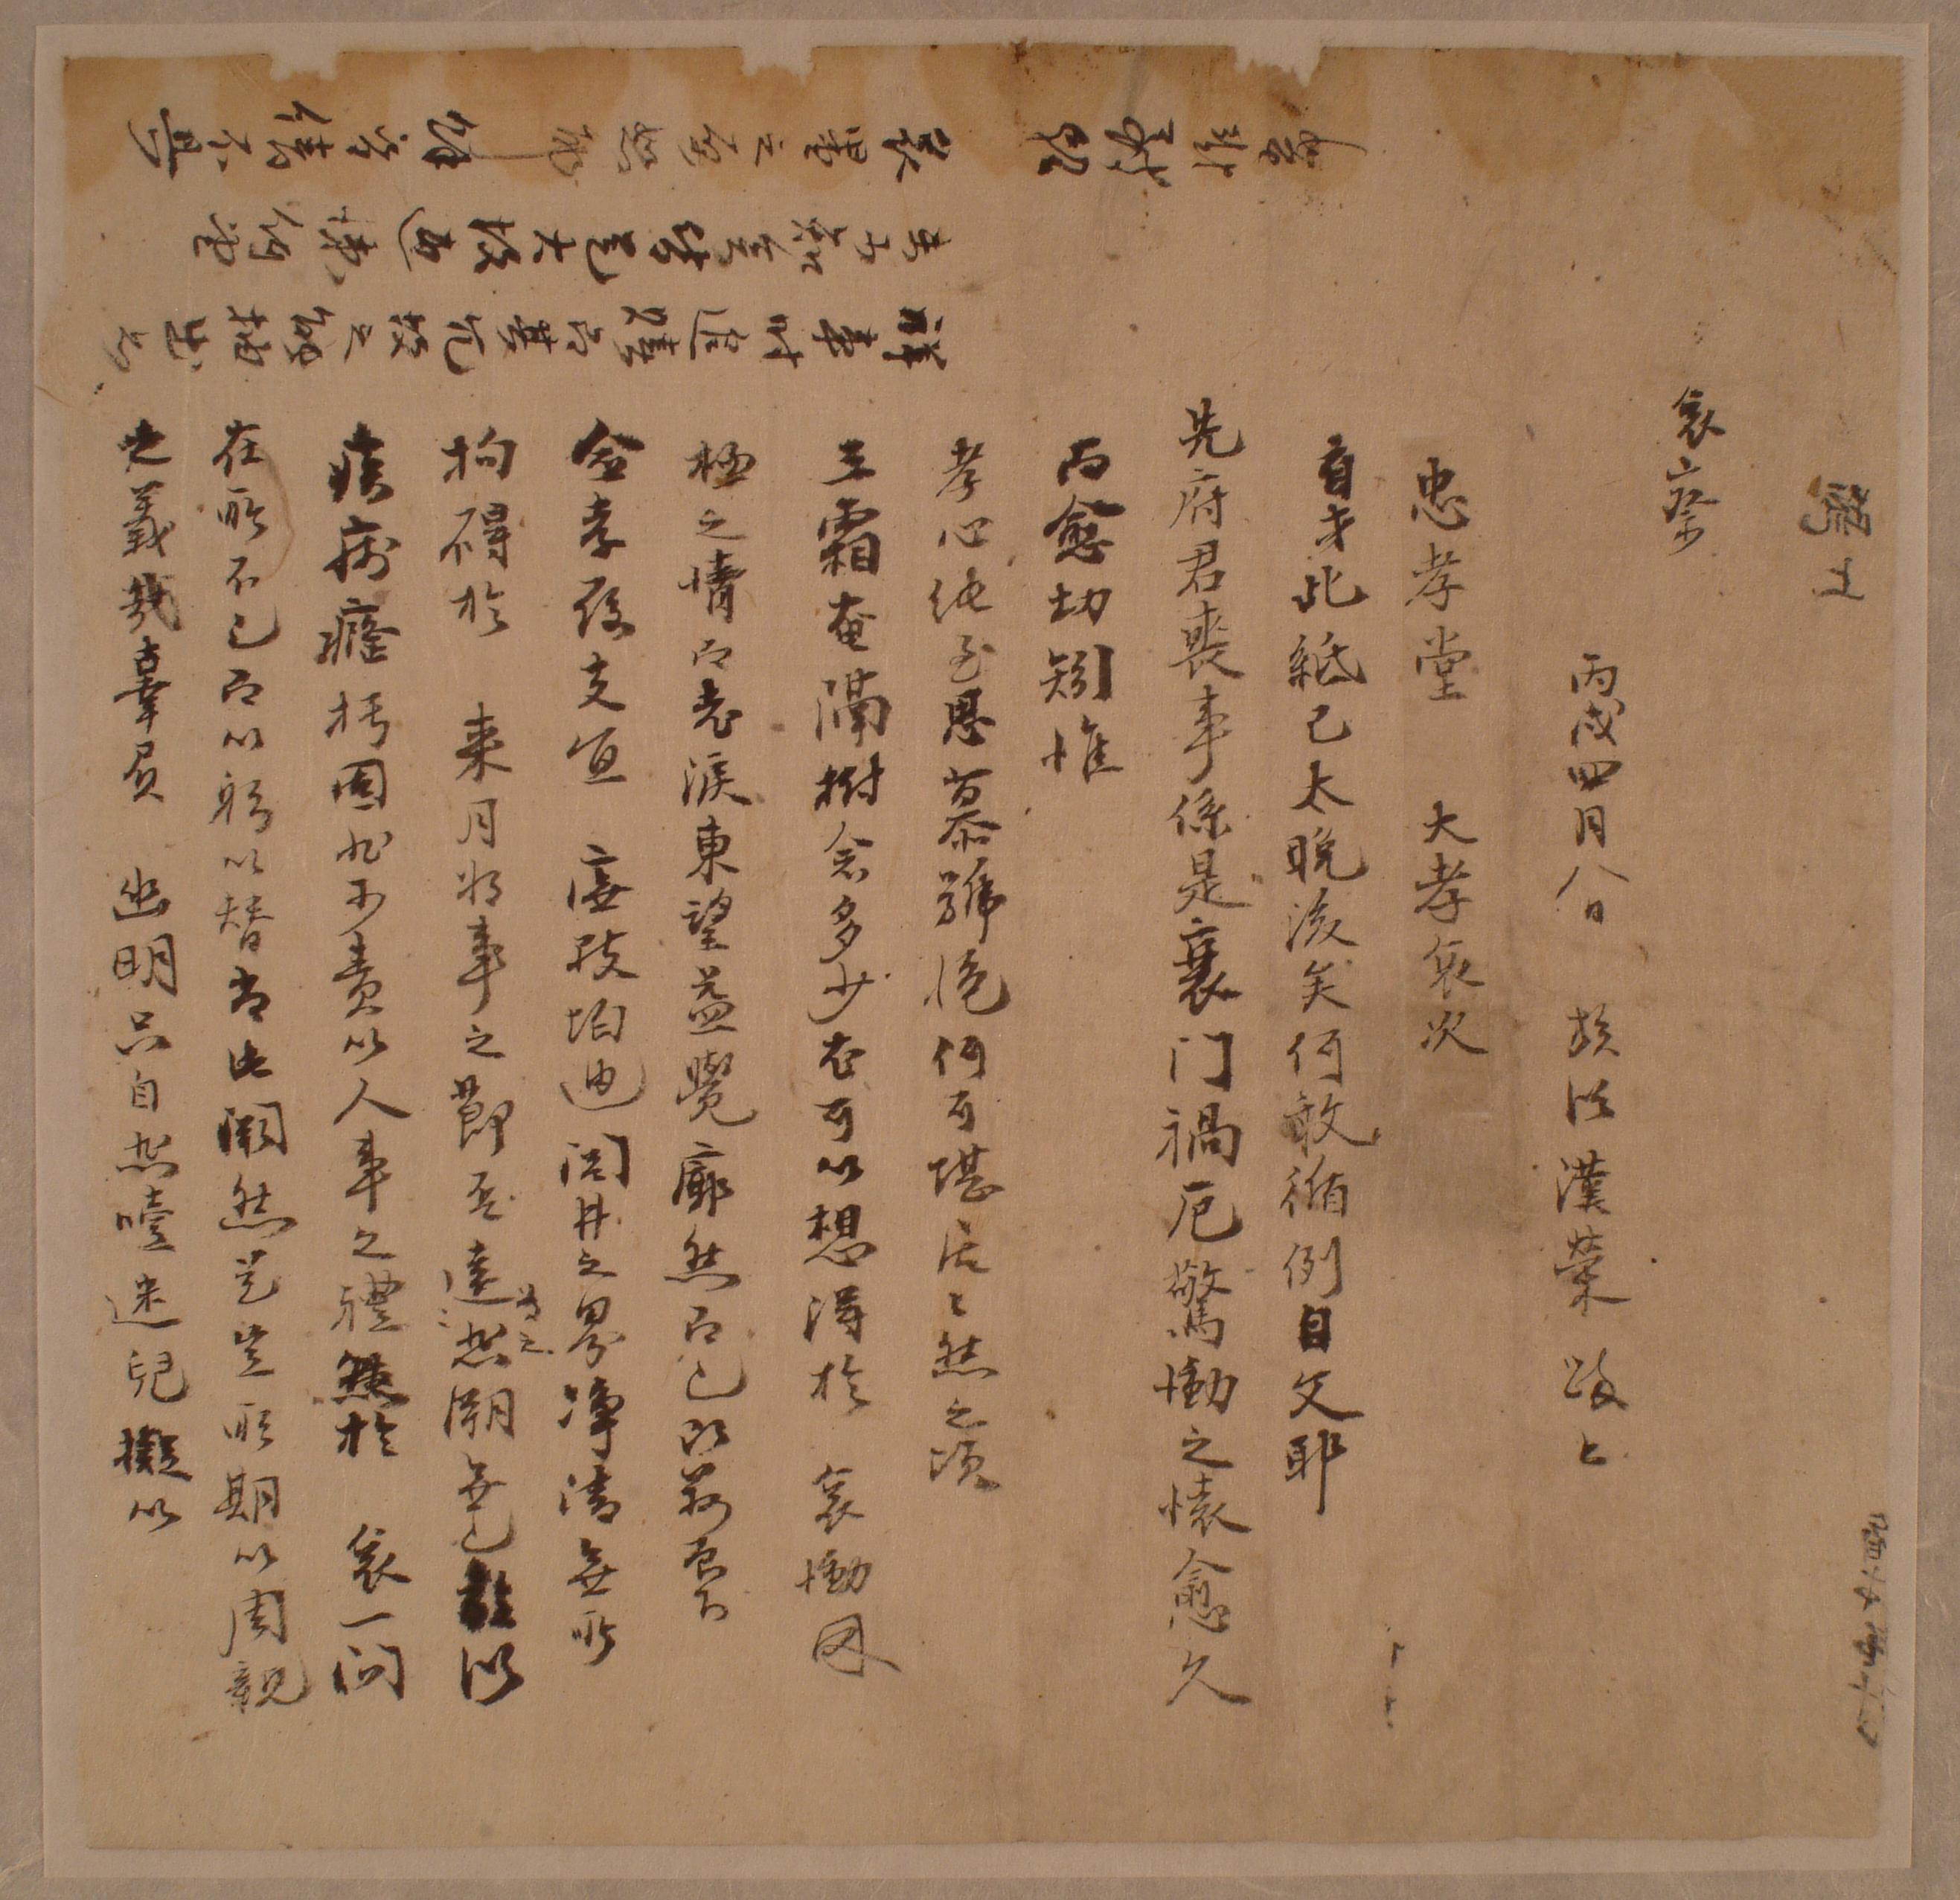 이한영이 병술년에 부친의 초상을 당한 충효당(忠孝堂)에 보낸 조문 편지